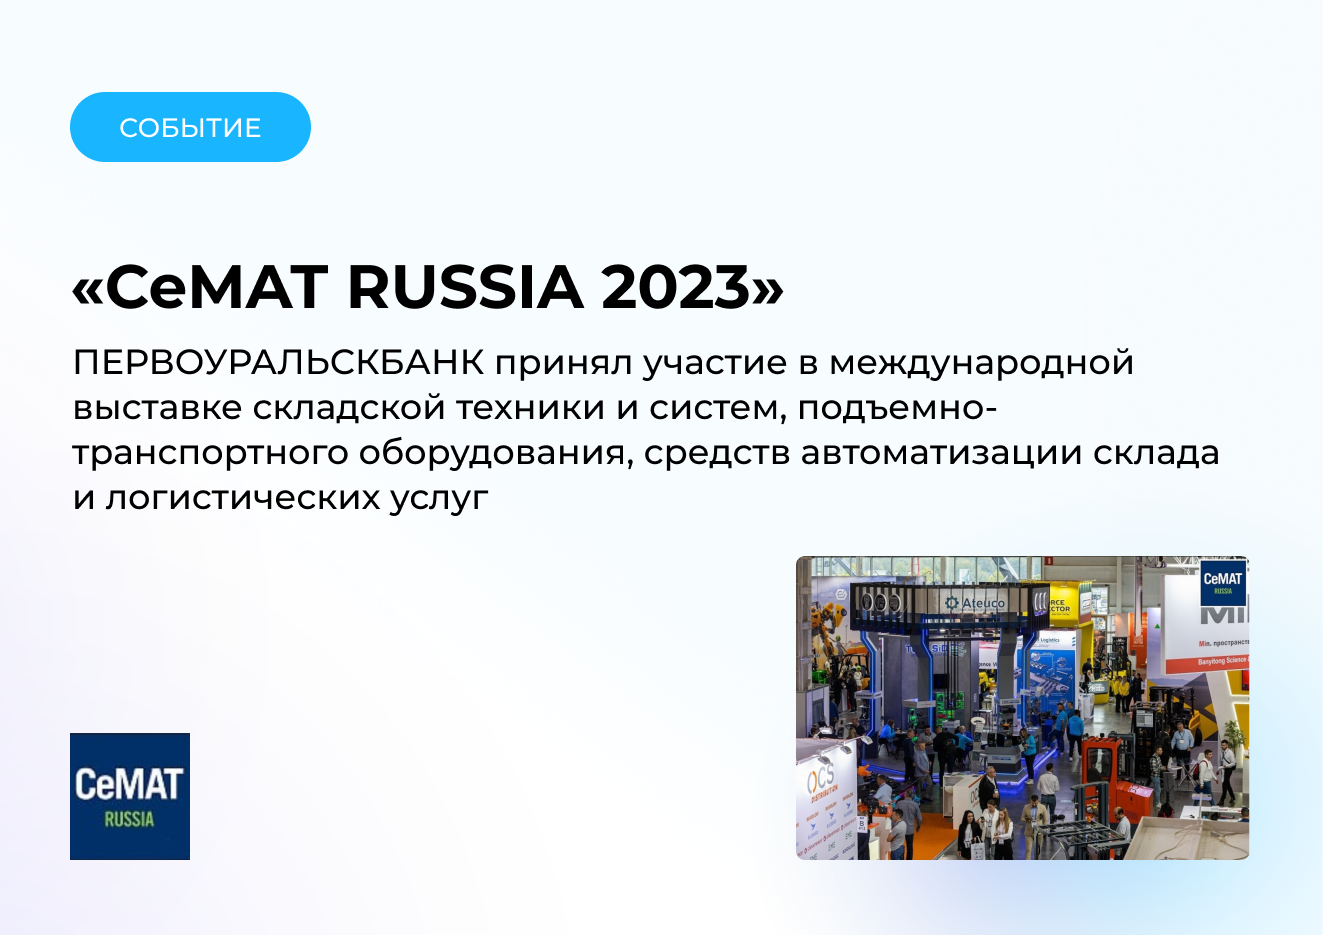 ПЕРВОУРАЛЬСКБАНК участвовал в выставке CeMAT RUSSIA 2023